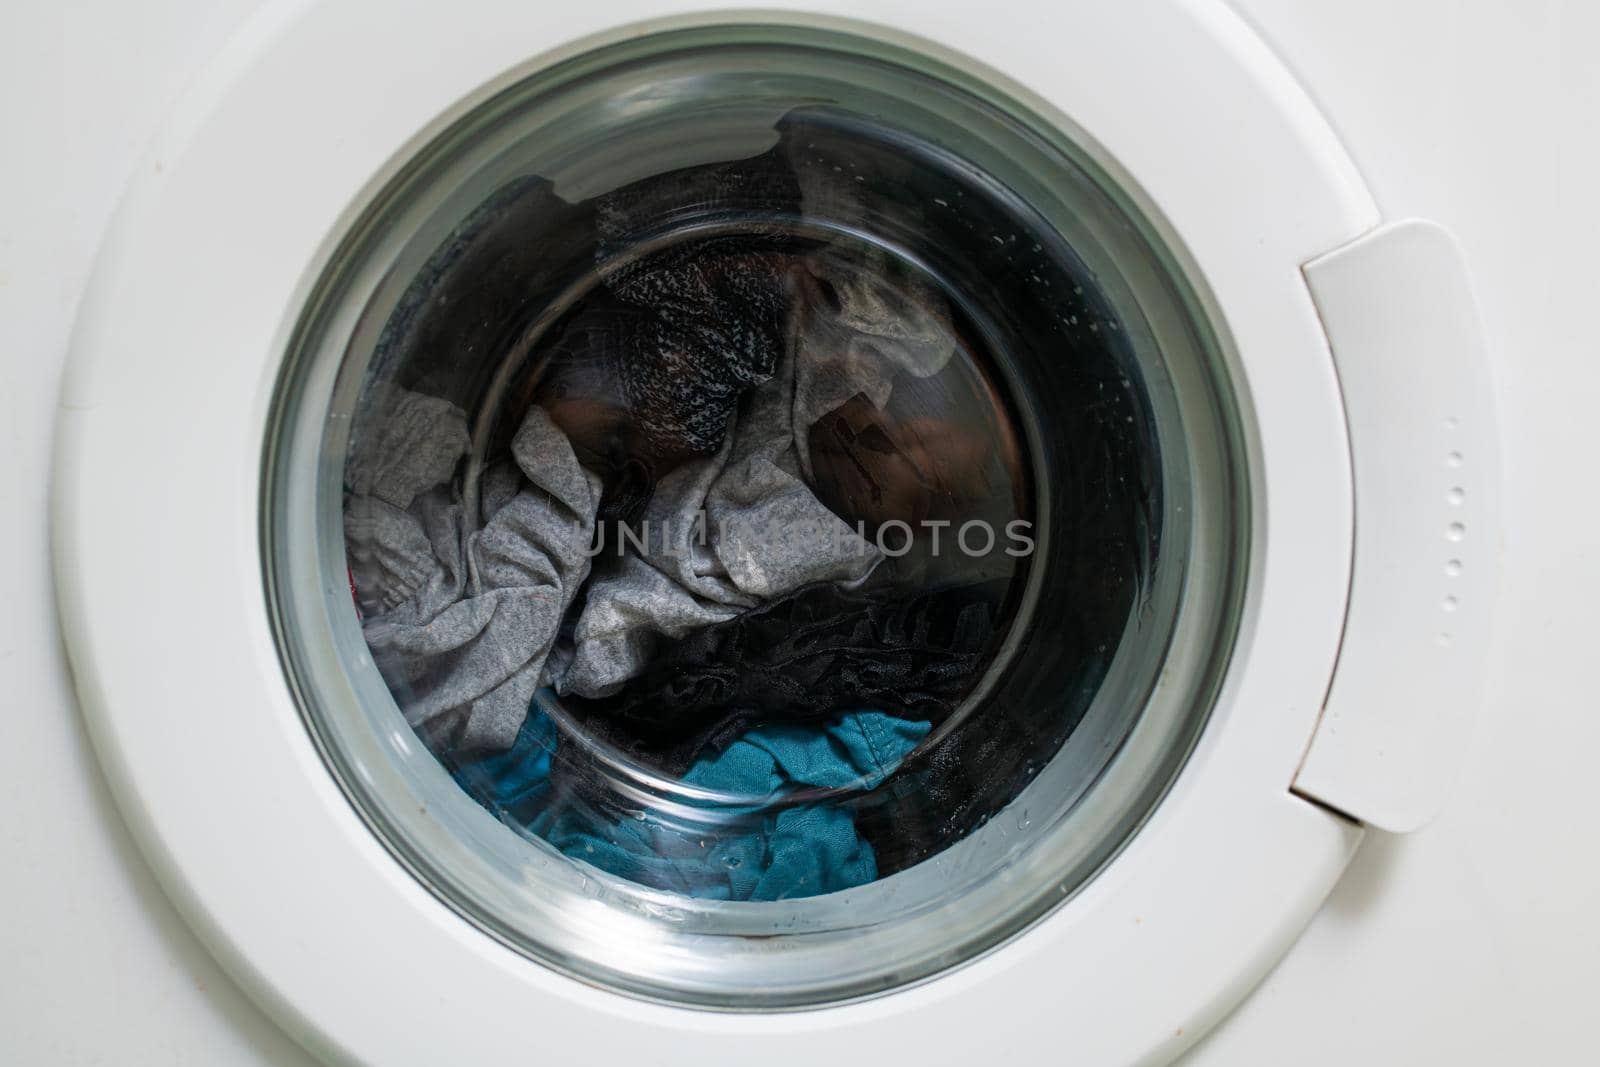 washing machine glass by Sonat